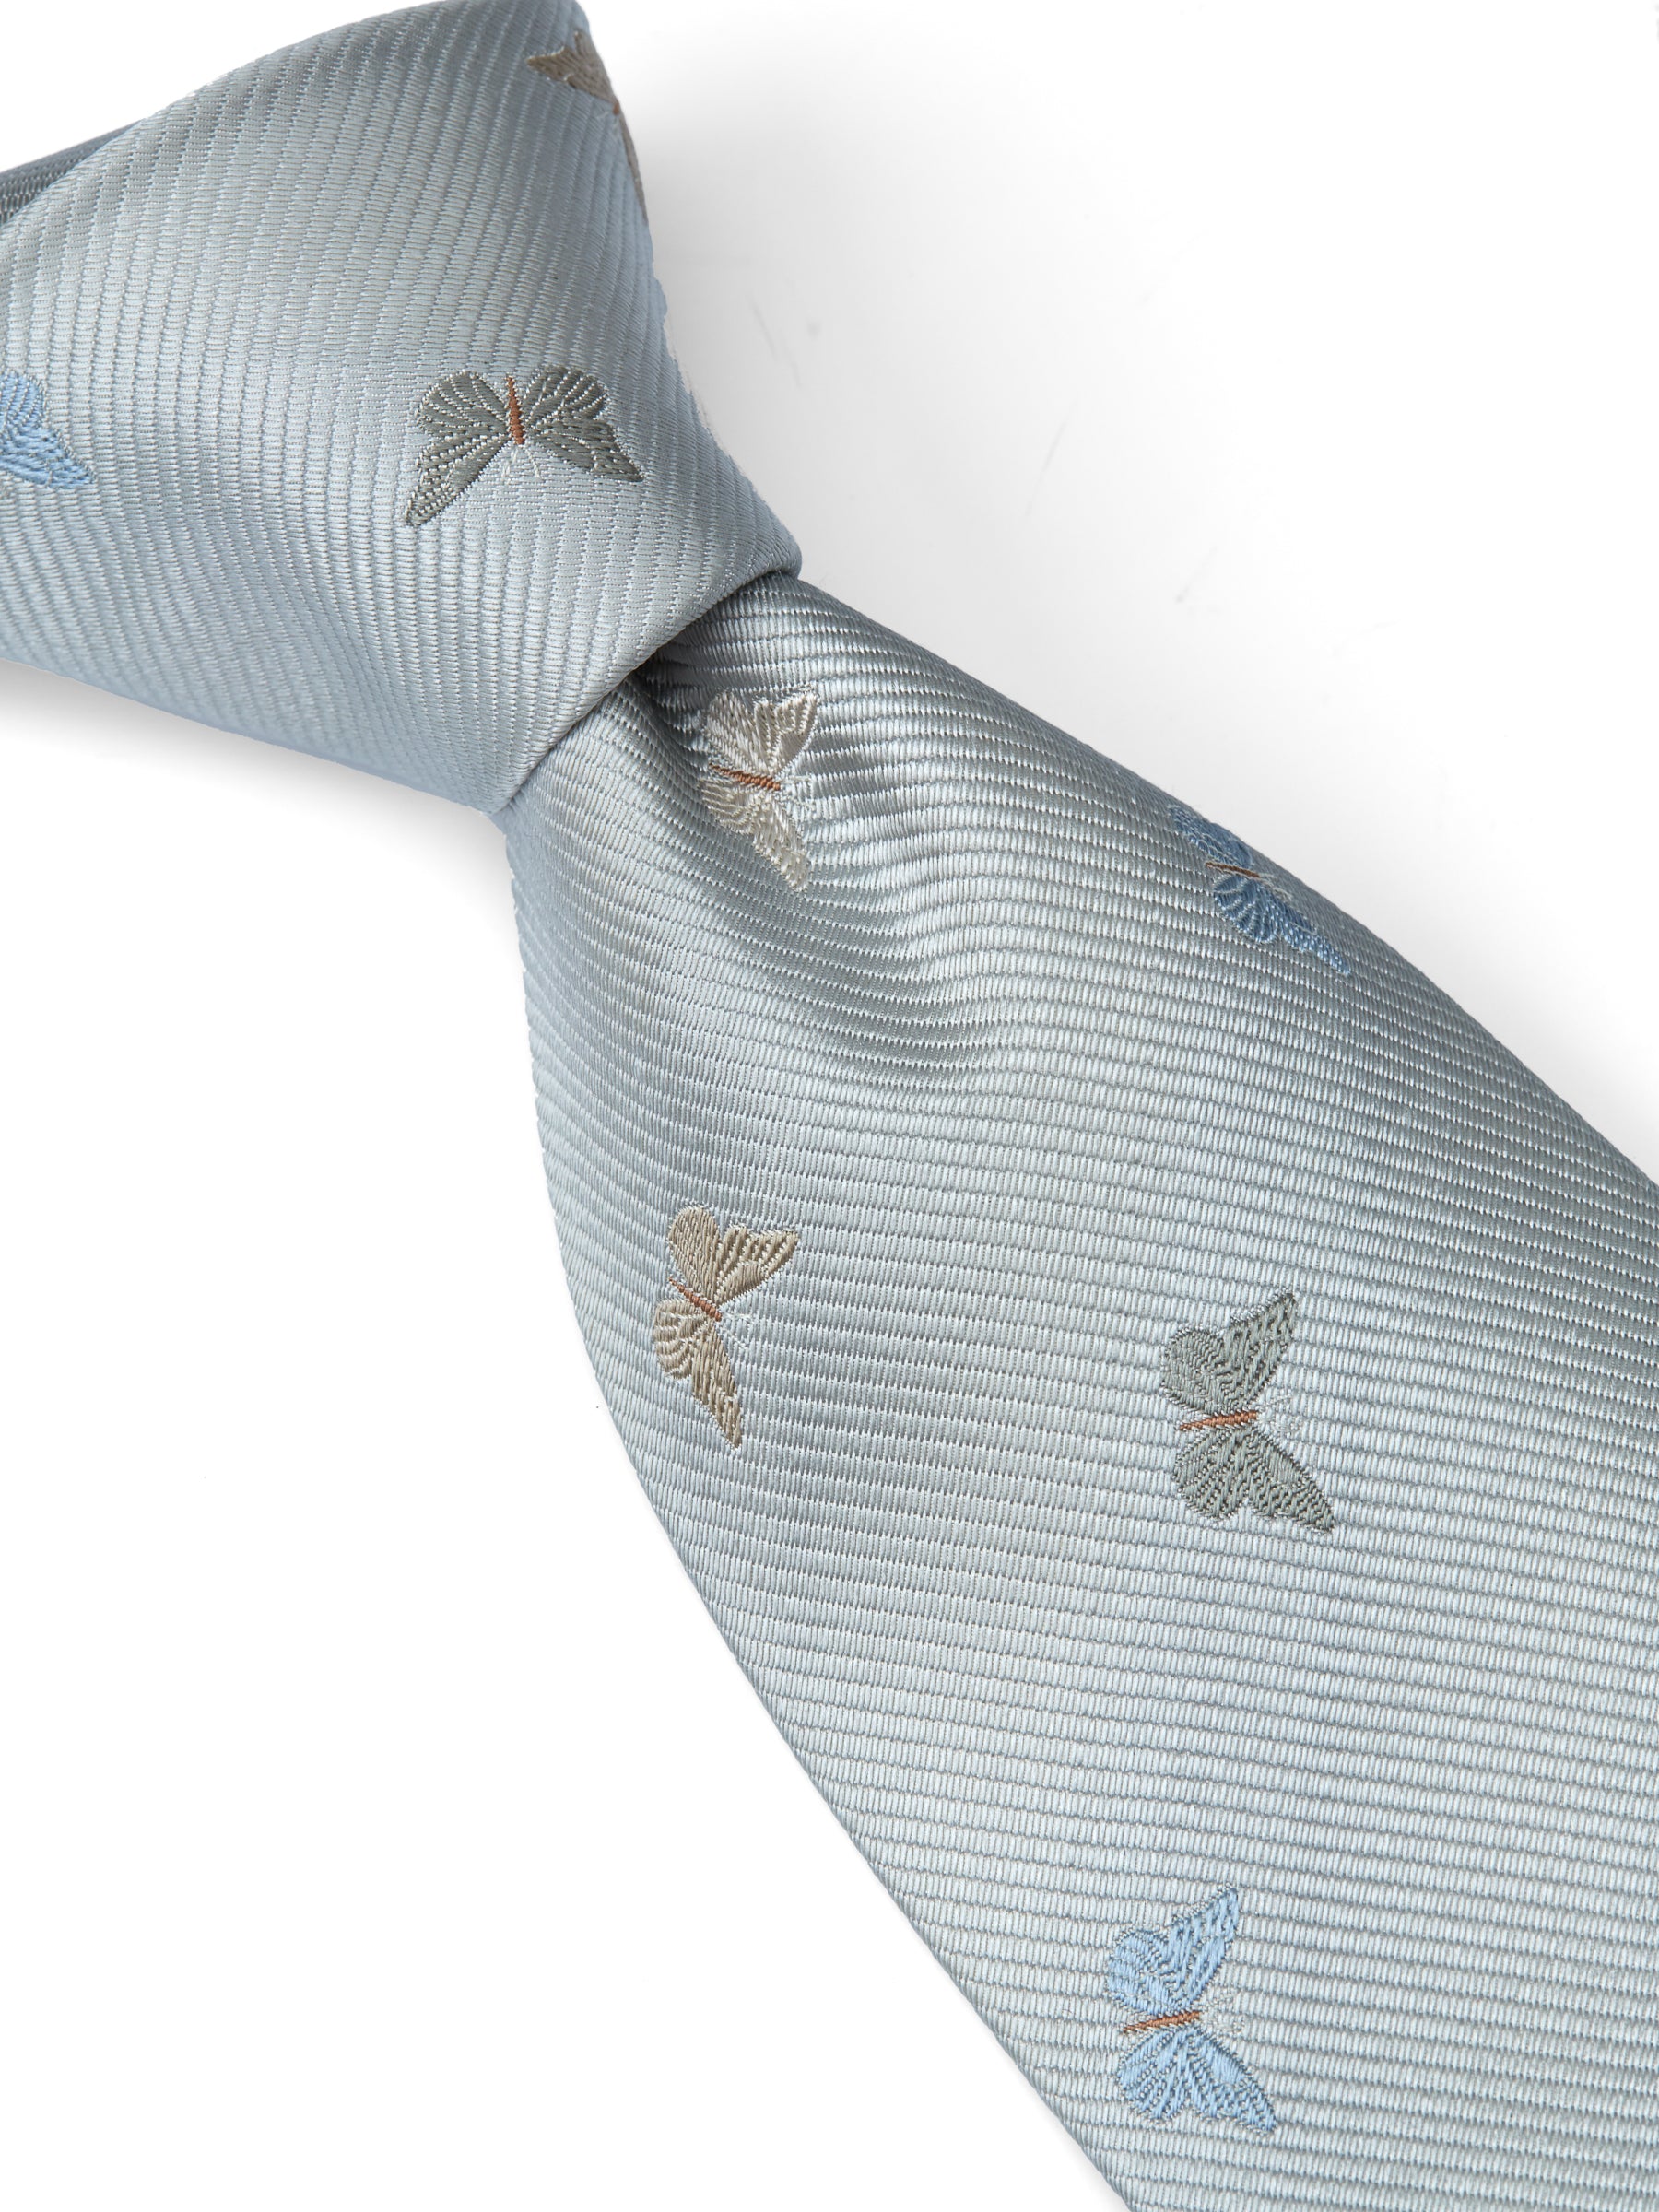 Grey Butterfly Silk Tie